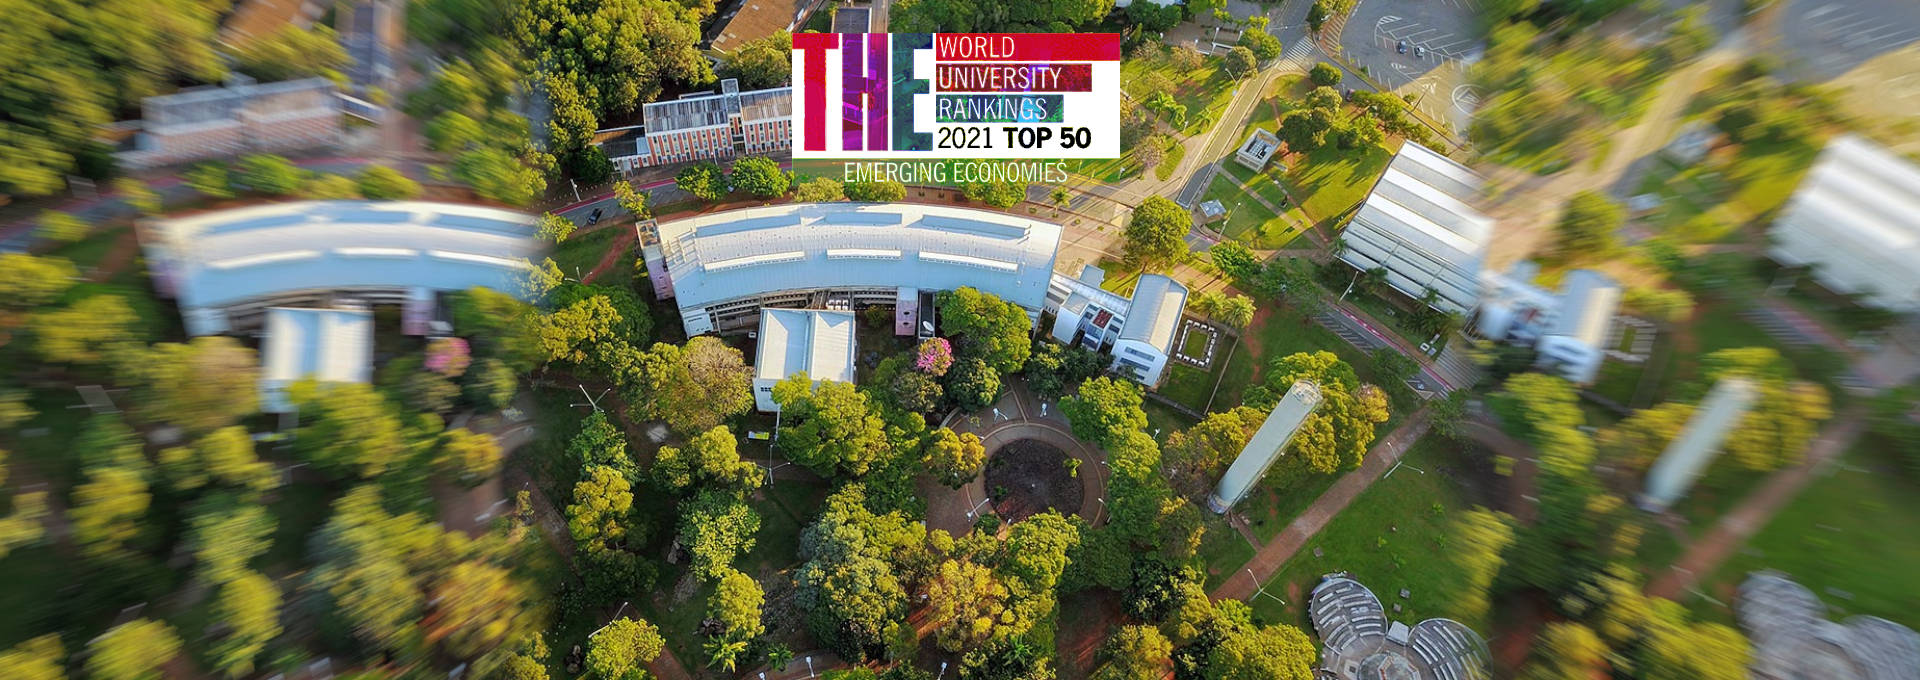 audiodescrição: imagem aérea com vista do ciclo básico da unicamp; logo colorida do ranking times higher education está aplicada sobre a fotografia